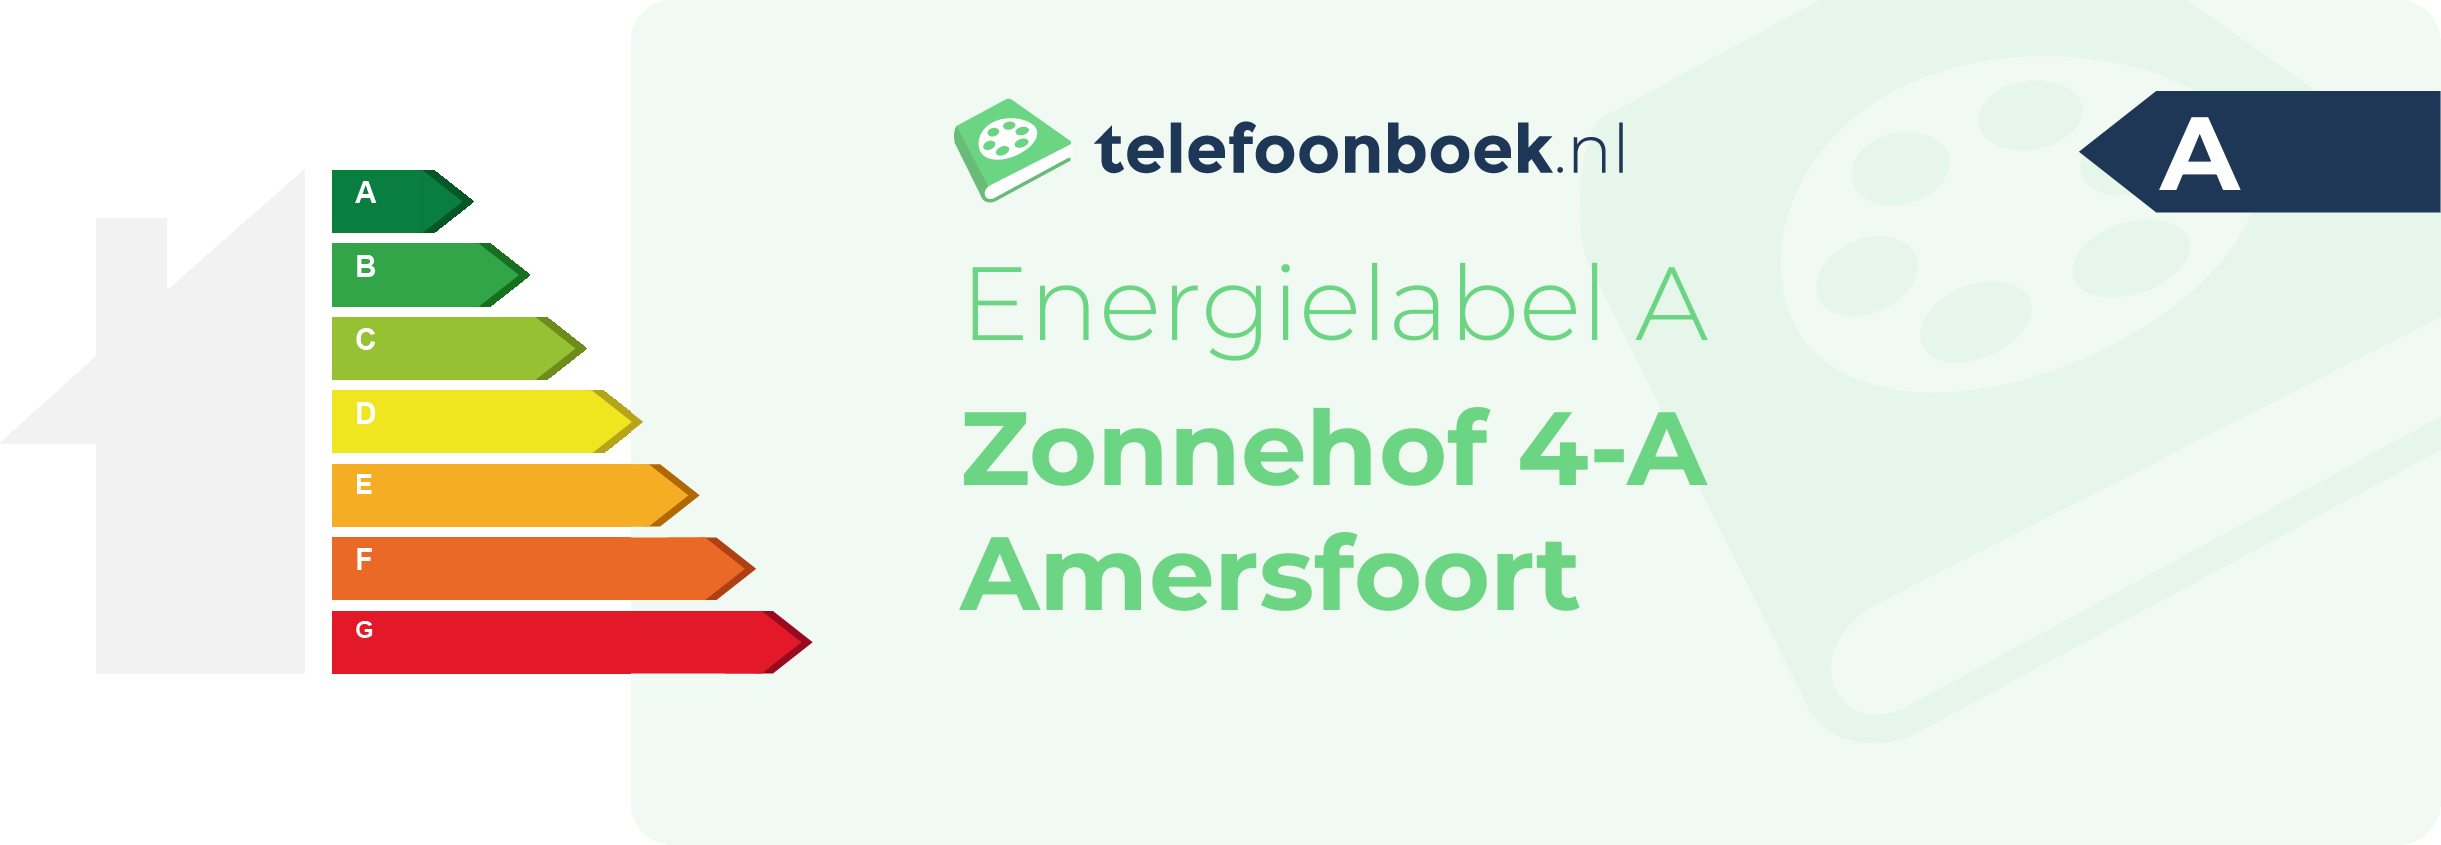 Energielabel Zonnehof 4-A Amersfoort